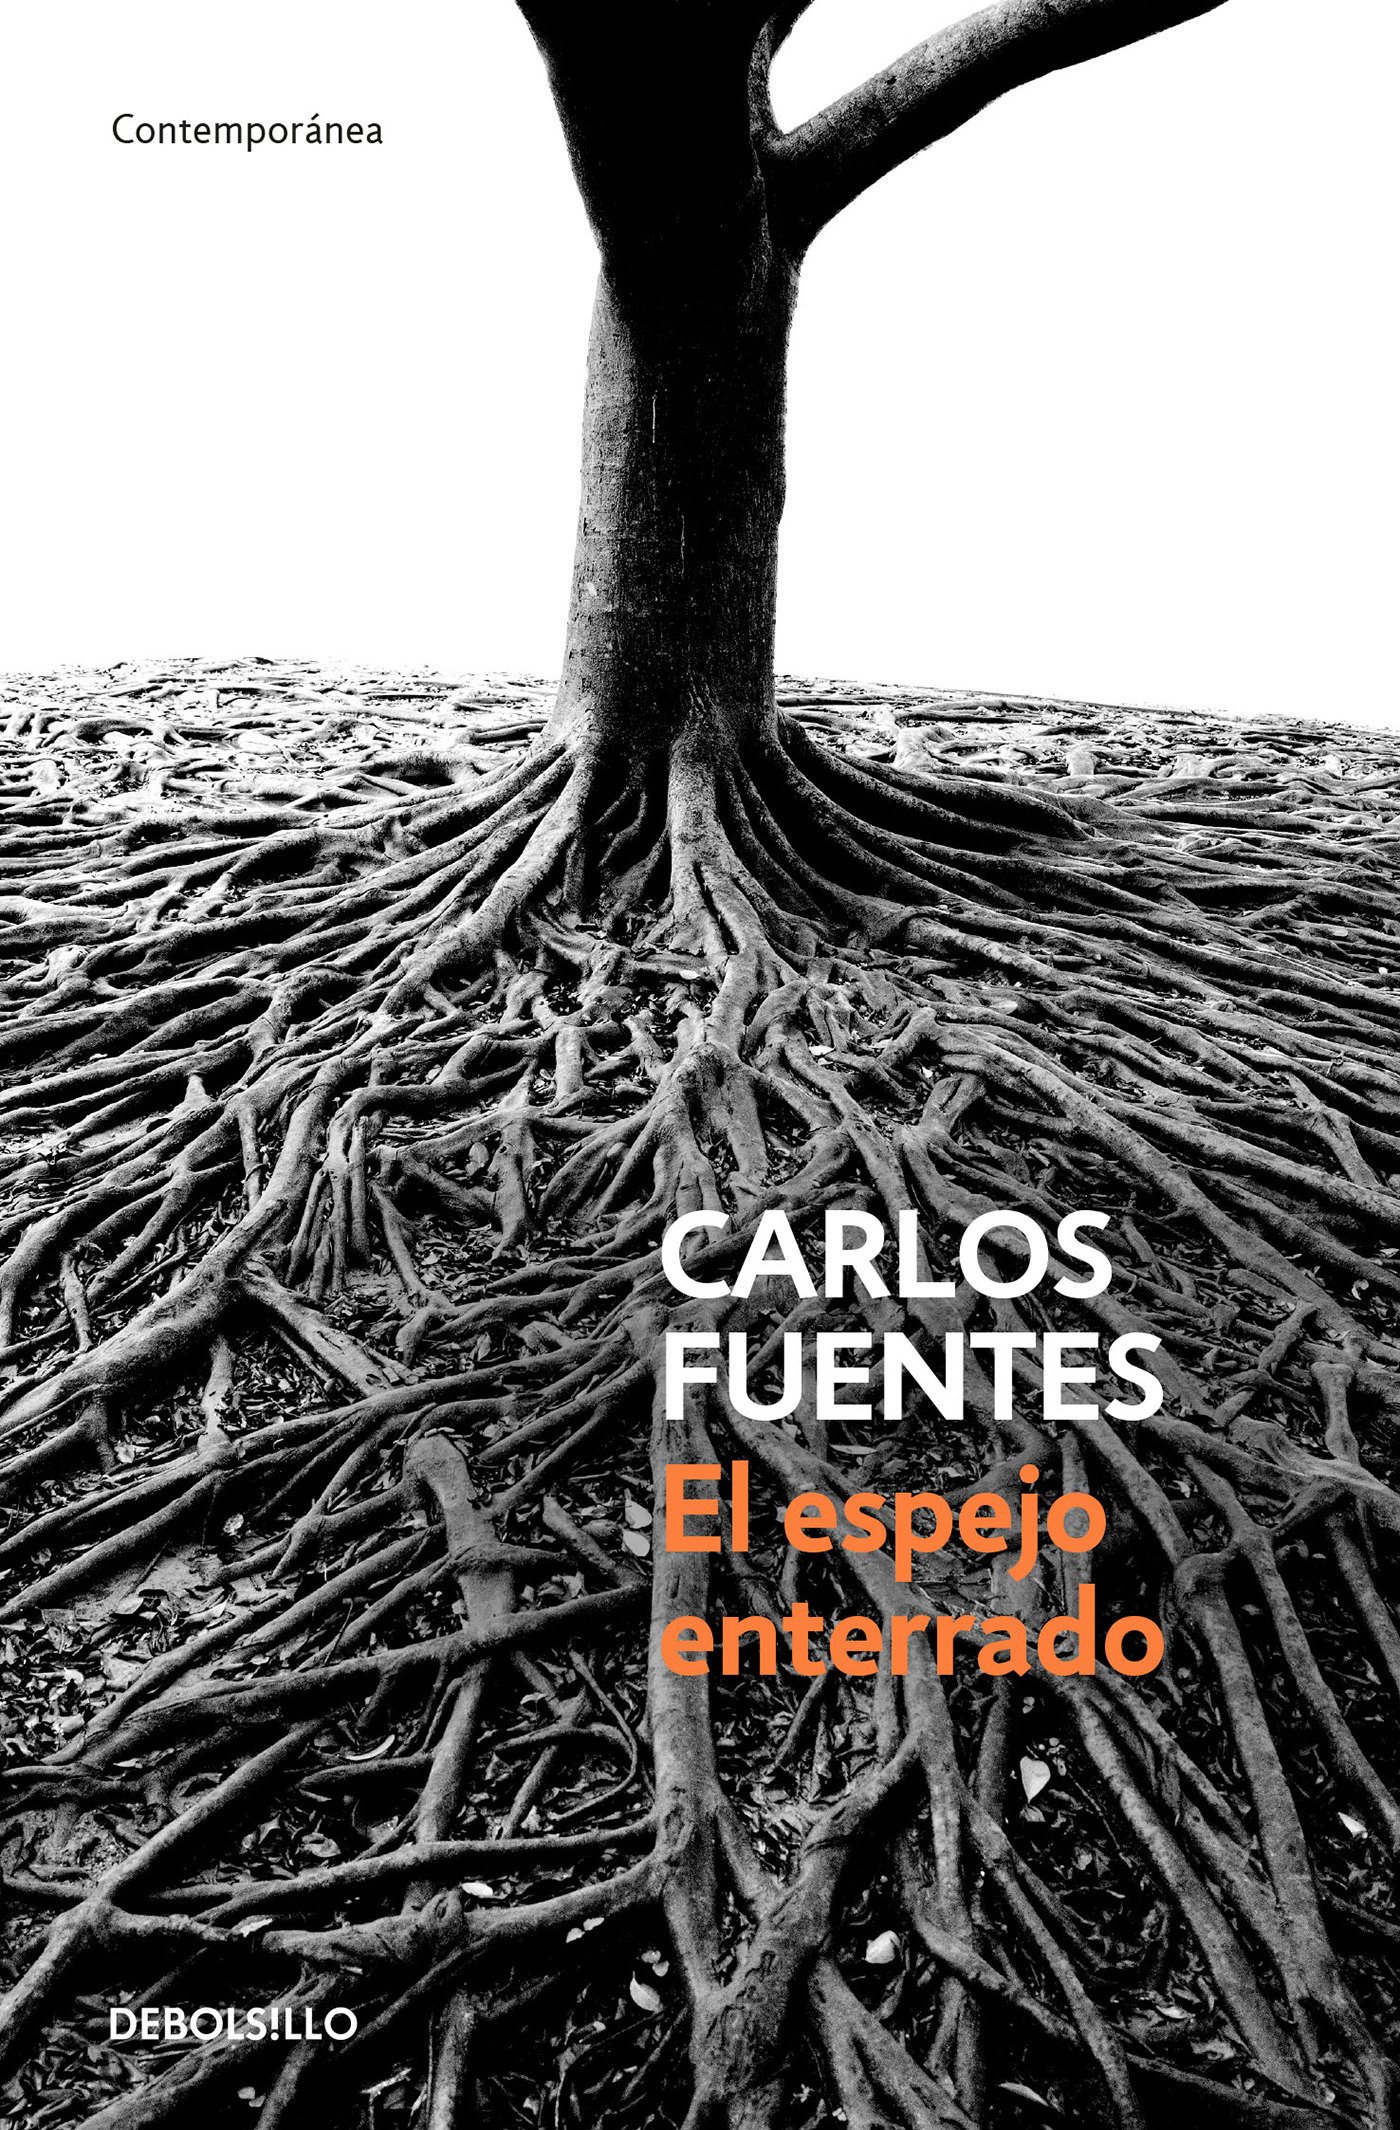 Zenda recomienda: El espejo enterrado, de Carlos Fuentes